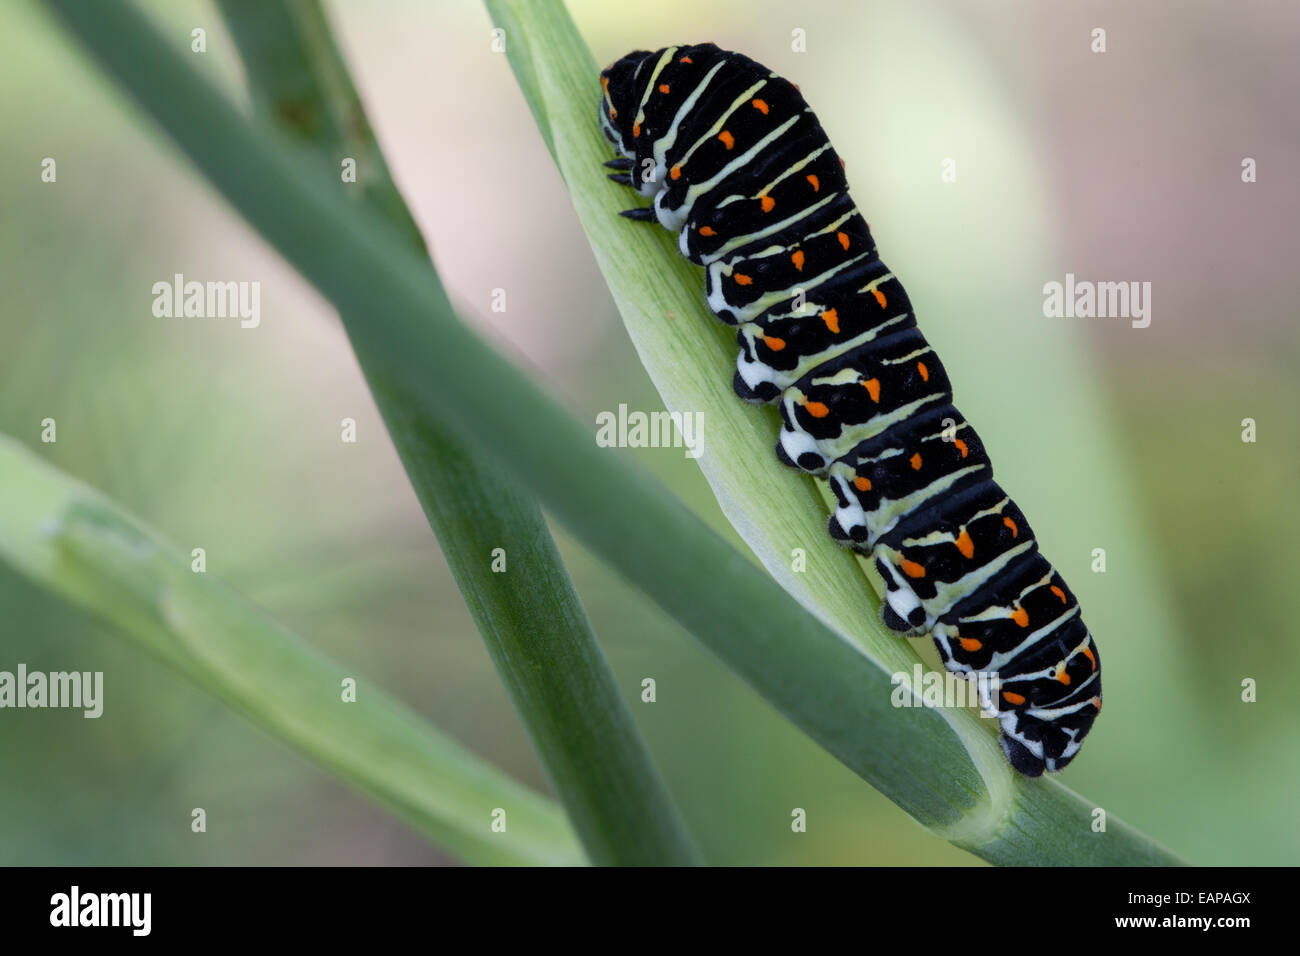 Climbing caterpillar in the garden Stock Photo